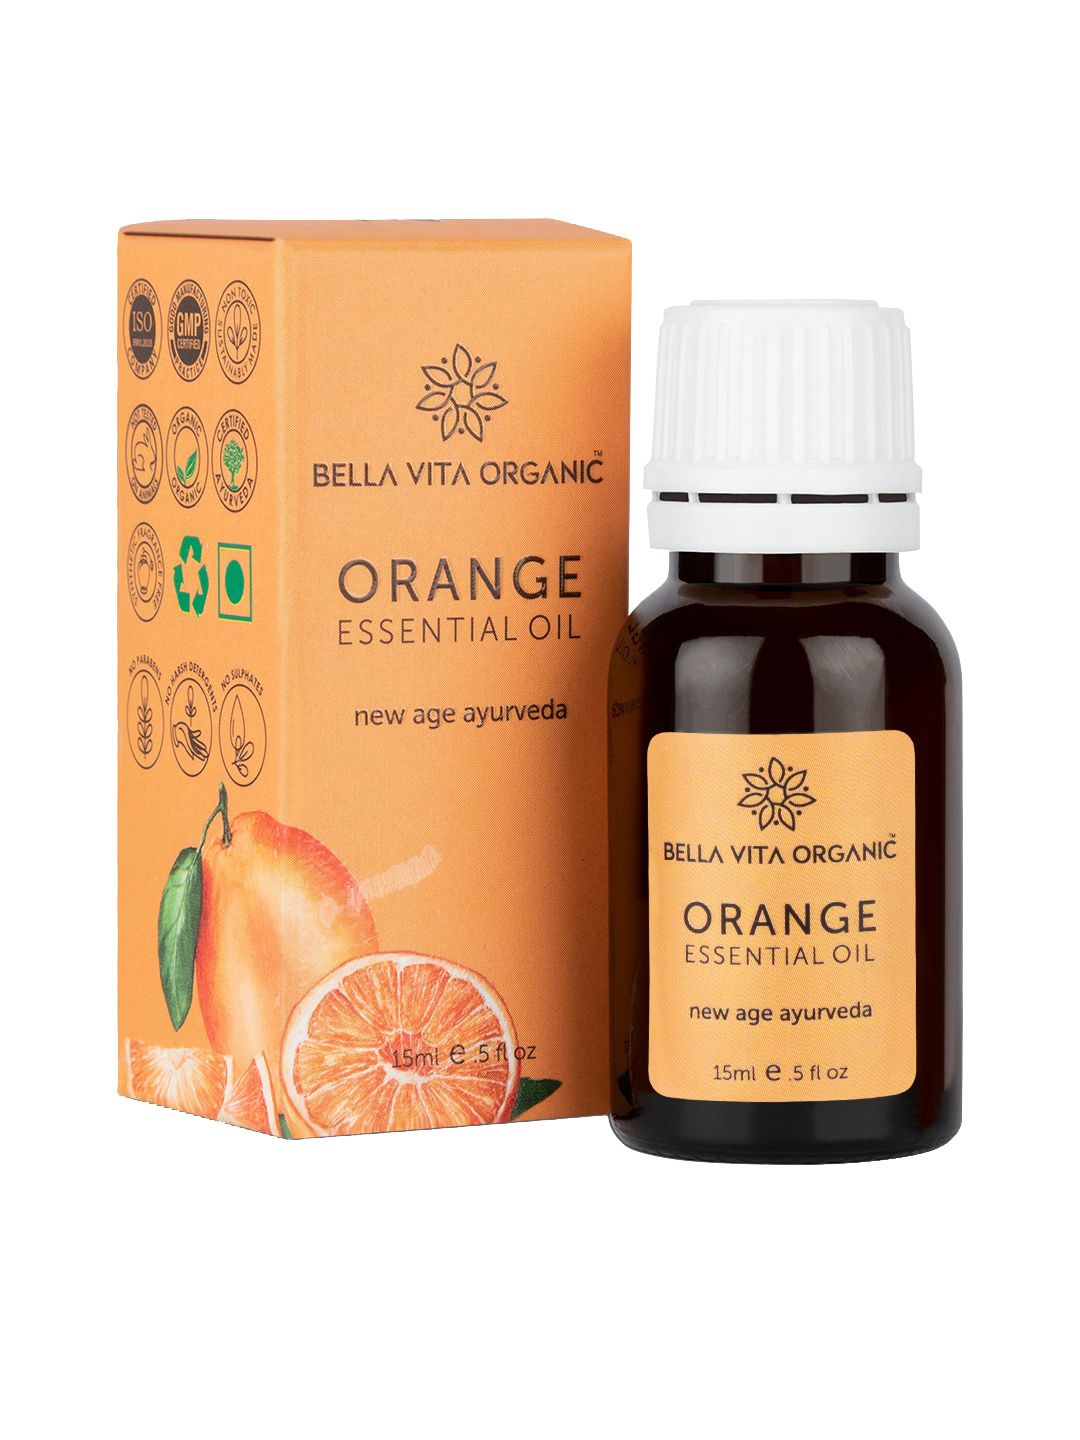 Bella Vita Organic Orange Essential Oil 15ml Price in India